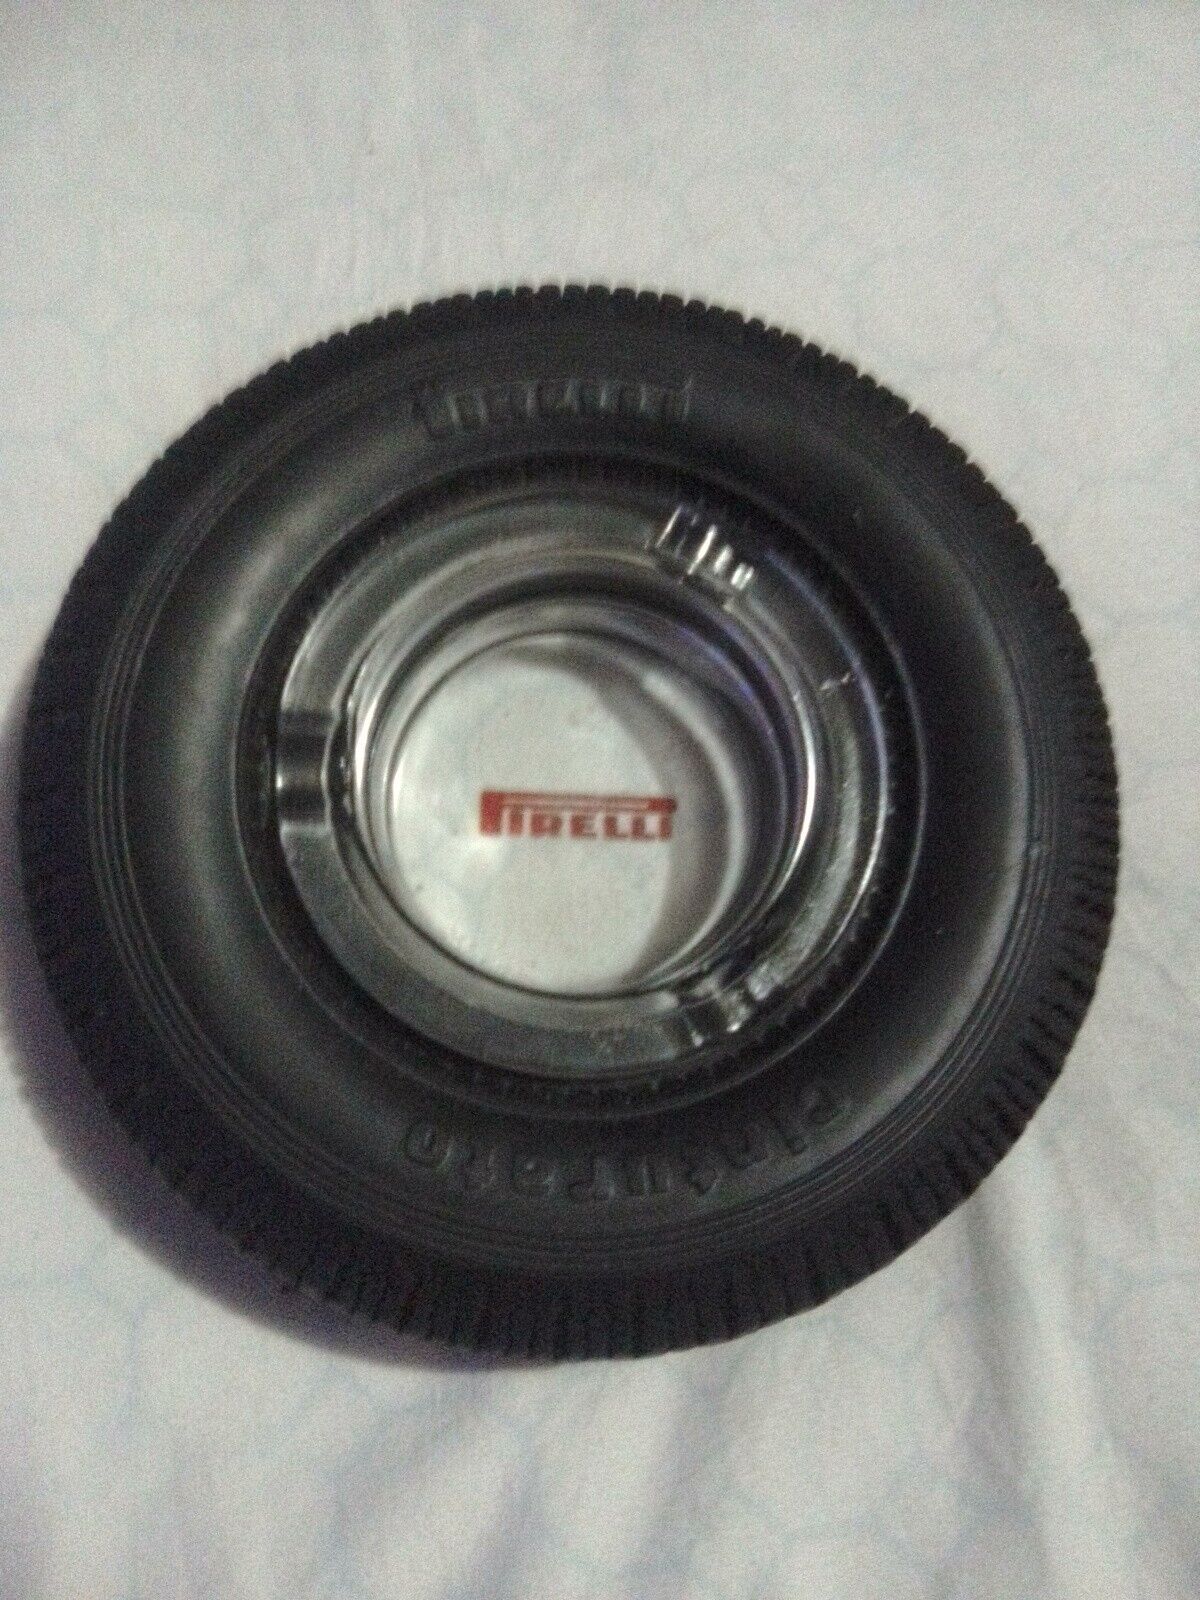 1960s Vintage Pirelli Tyre Promotional Ashtray